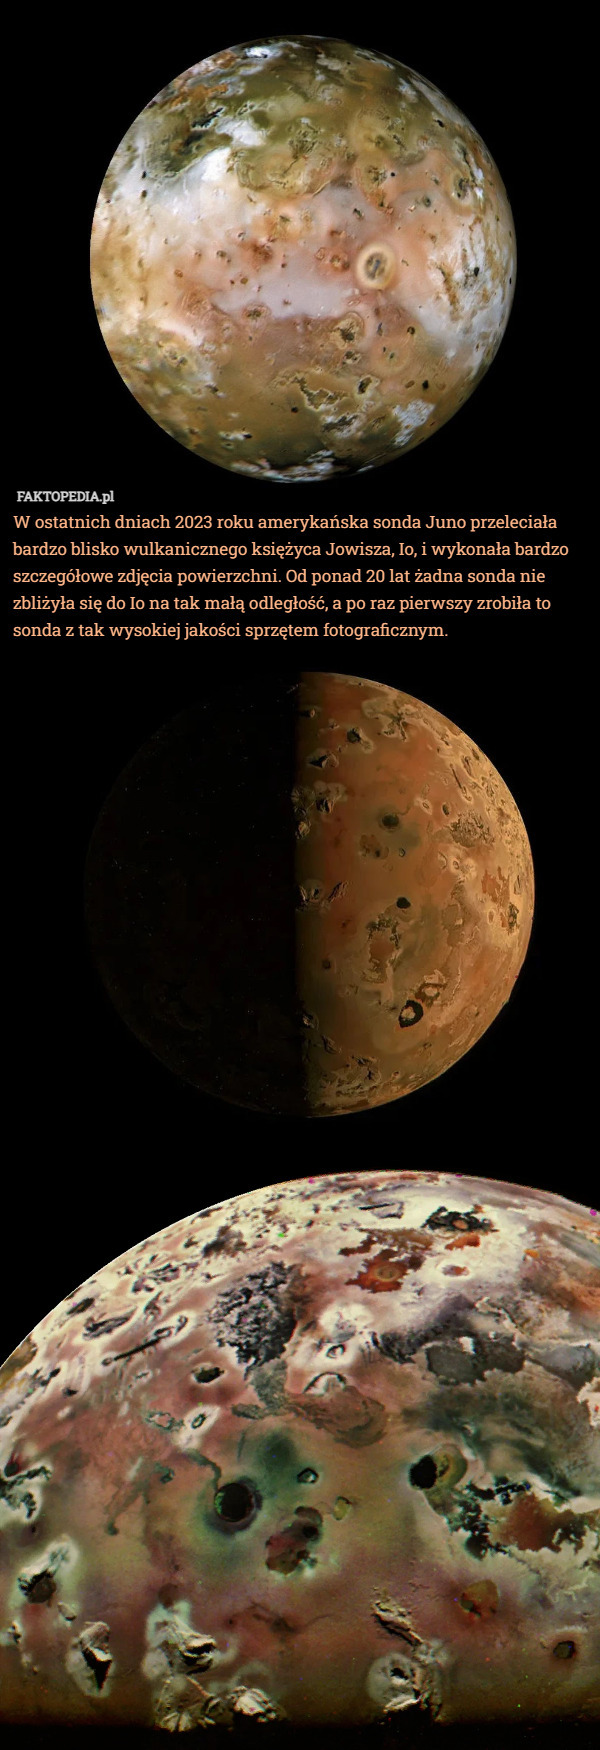 W ostatnich dniach 2023 roku amerykańska sonda Juno przeleciała bardzo blisko wulkanicznego księżyca Jowisza, Io, i wykonała bardzo szczegółowe zdjęcia powierzchni. Od ponad 20 lat żadna sonda nie zbliżyła się do Io na tak małą odległość, a po raz pierwszy zrobiła to sonda z tak wysokiej jakości sprzętem fotograficznym. 